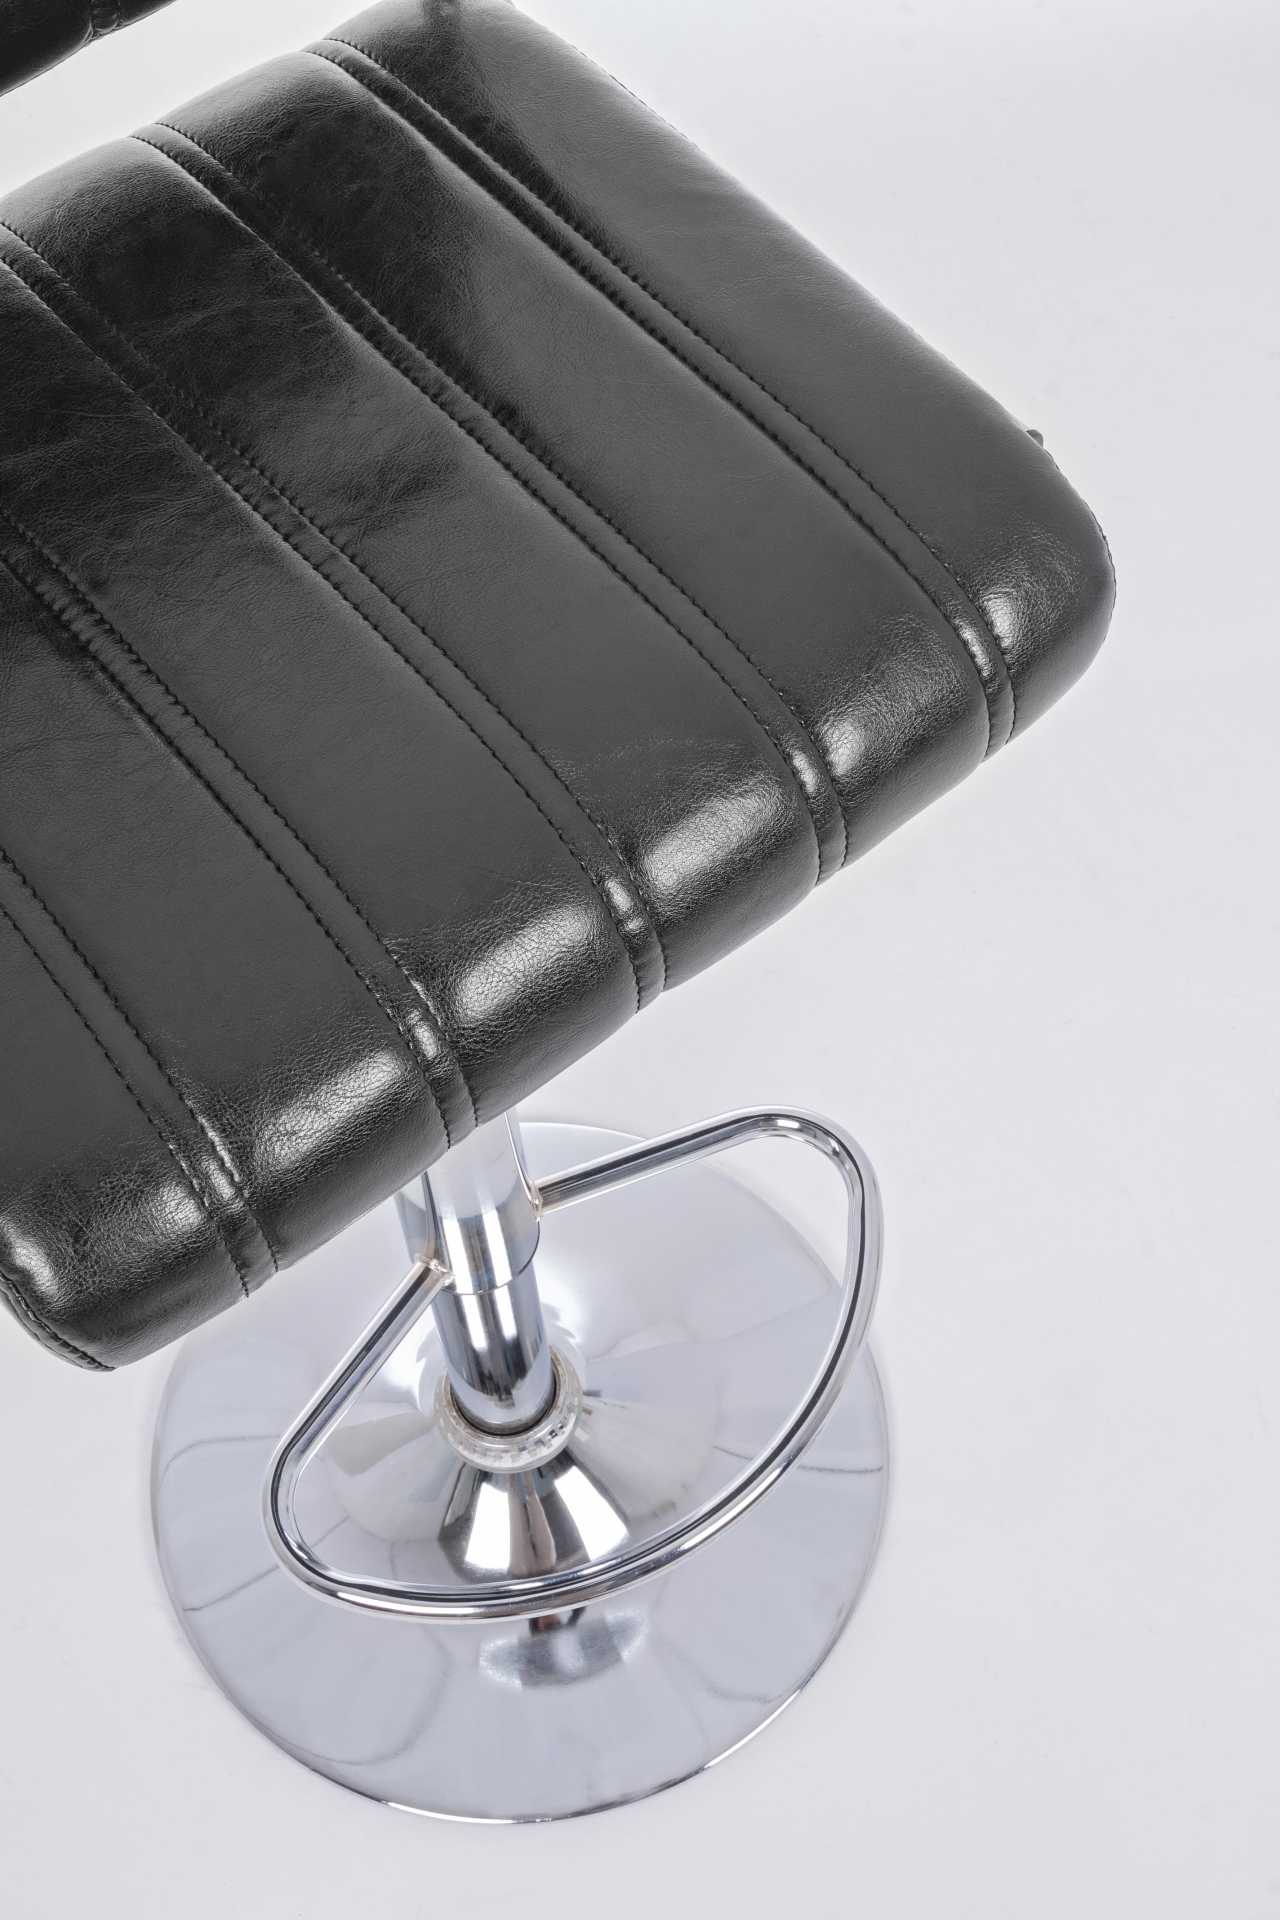 Der Barhocker Barclay überzeugt mit seinem klassischen Design. Gefertigt wurde er aus Kunstleder, welches einen schwarzen Farbton besitzt. Das Gestell ist aus Metall und hat eine silberne Farbe. Die Sitzhöhe des Hockers ist höhenverstellbar.